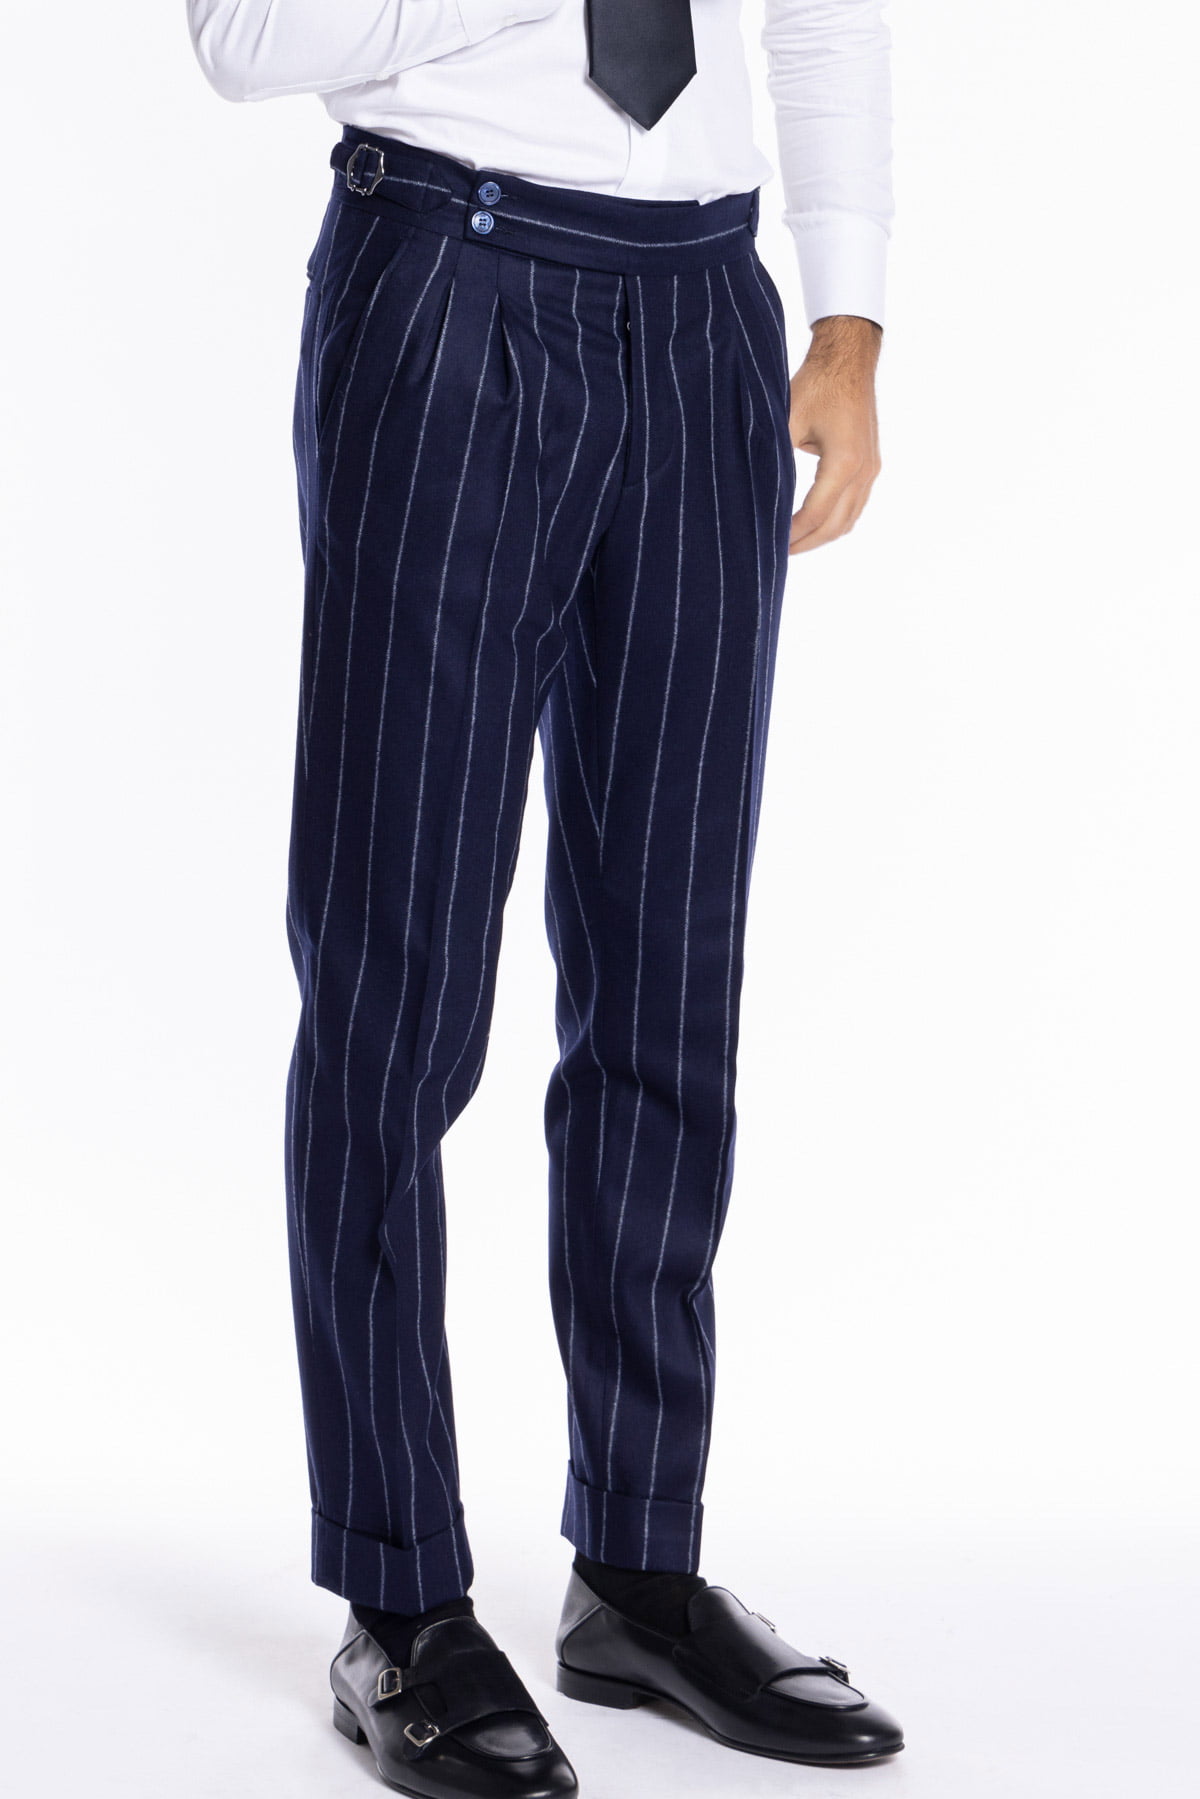 Pantalone uomo blu gessato vita alta tasca america in lana flanella Vitale Barberis Canonico con doppia pinces e fibbie laterali regolabili